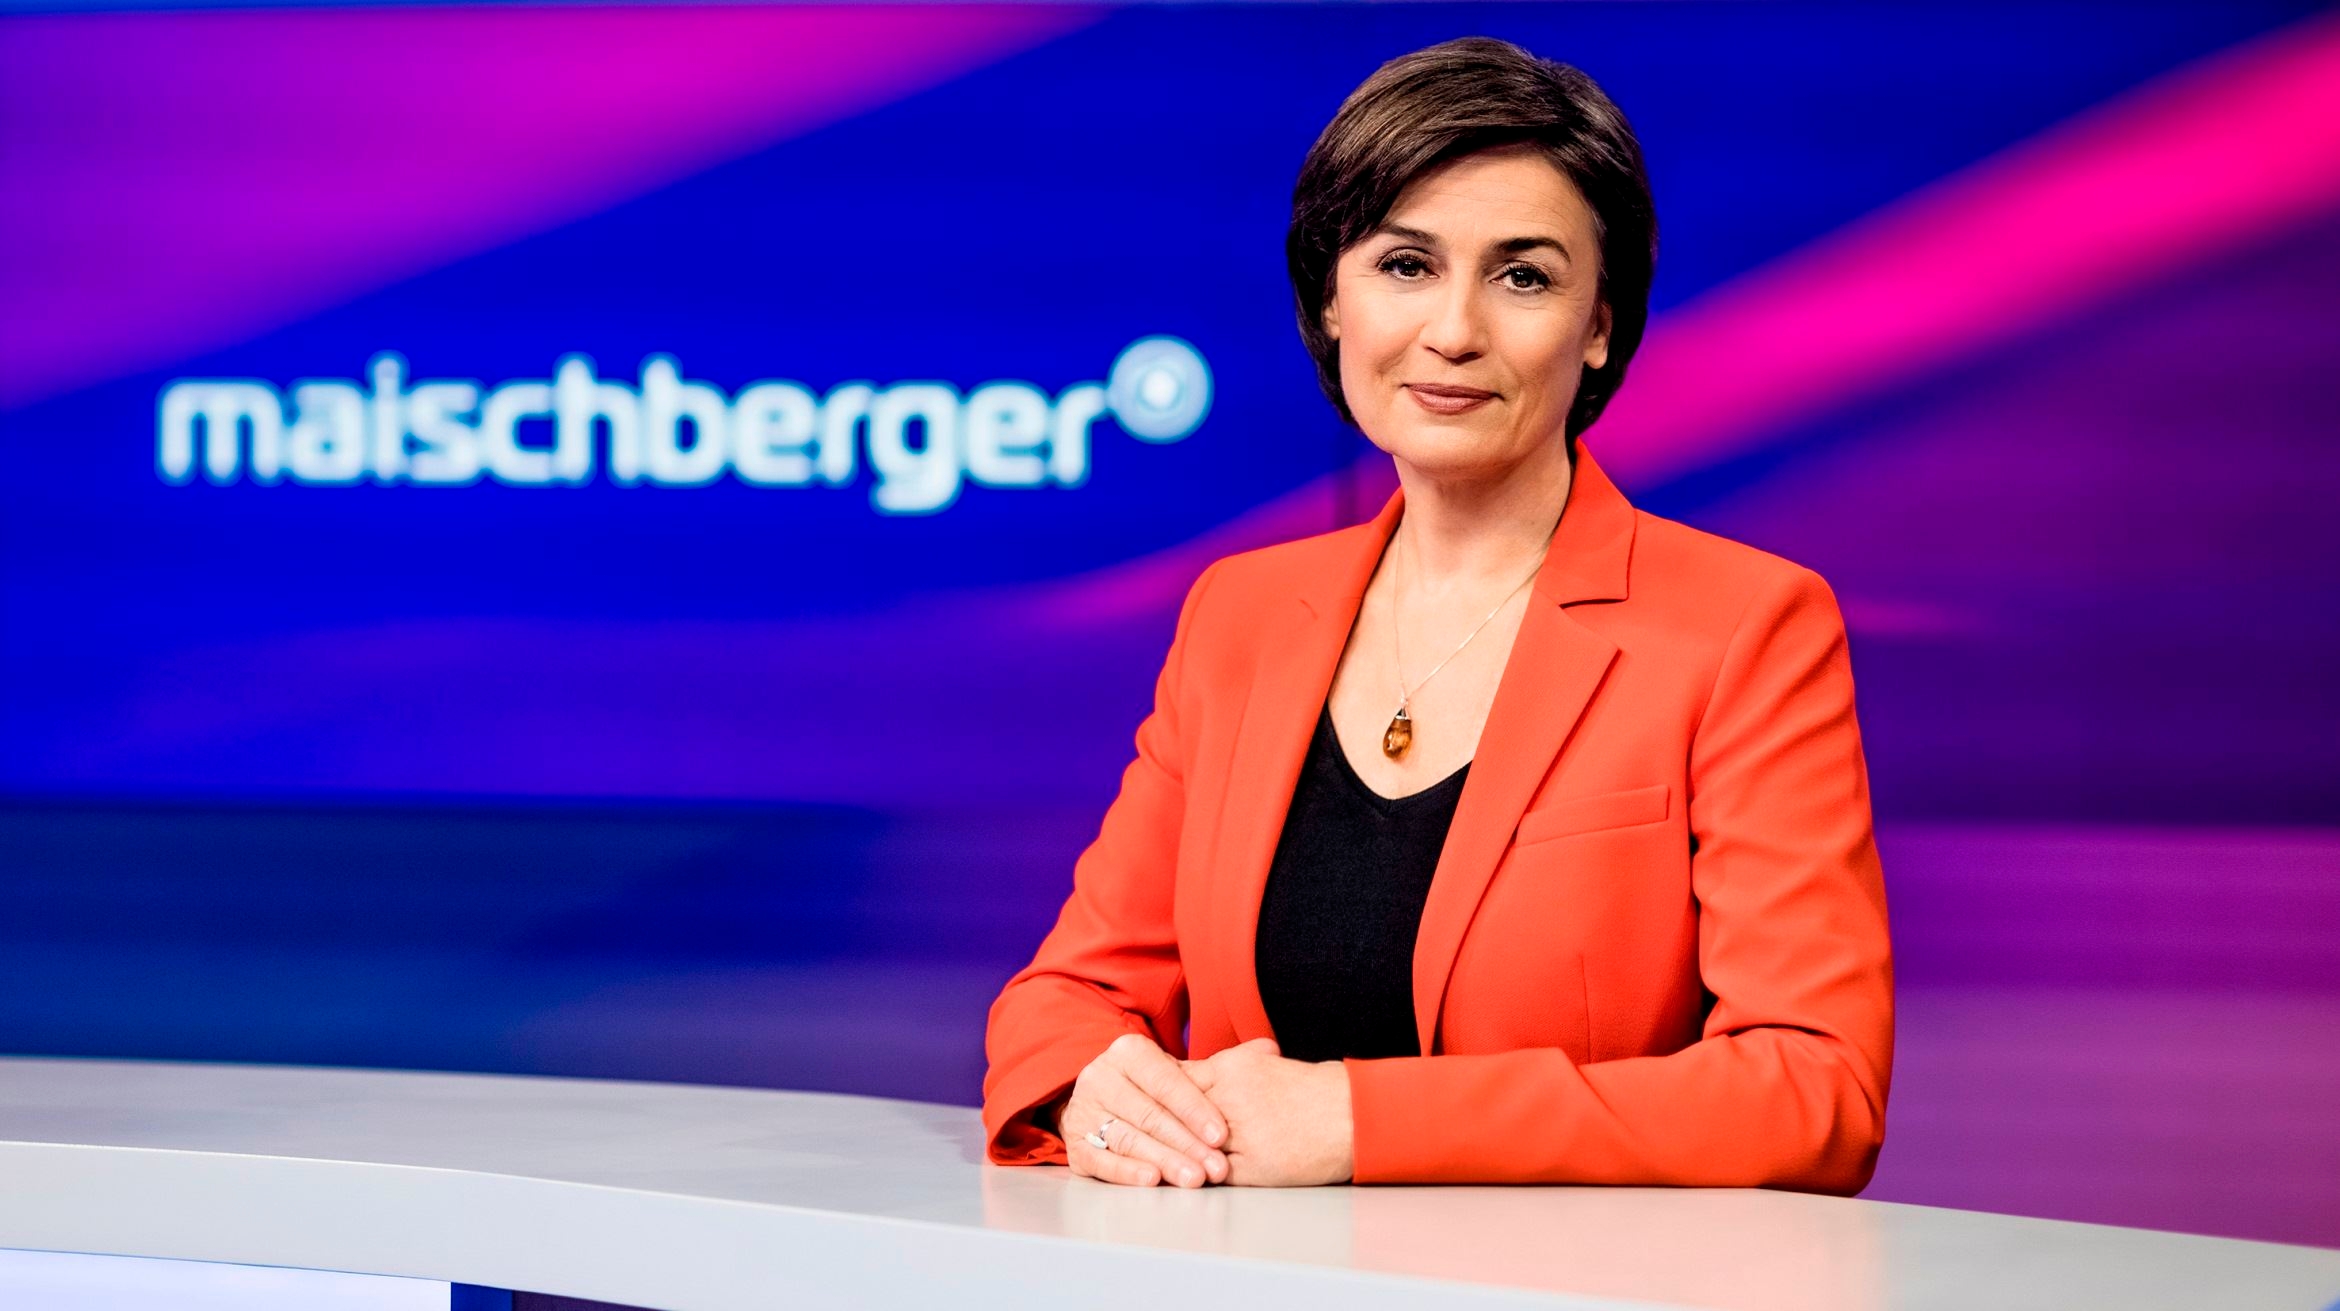 Sandra Maischberger - 